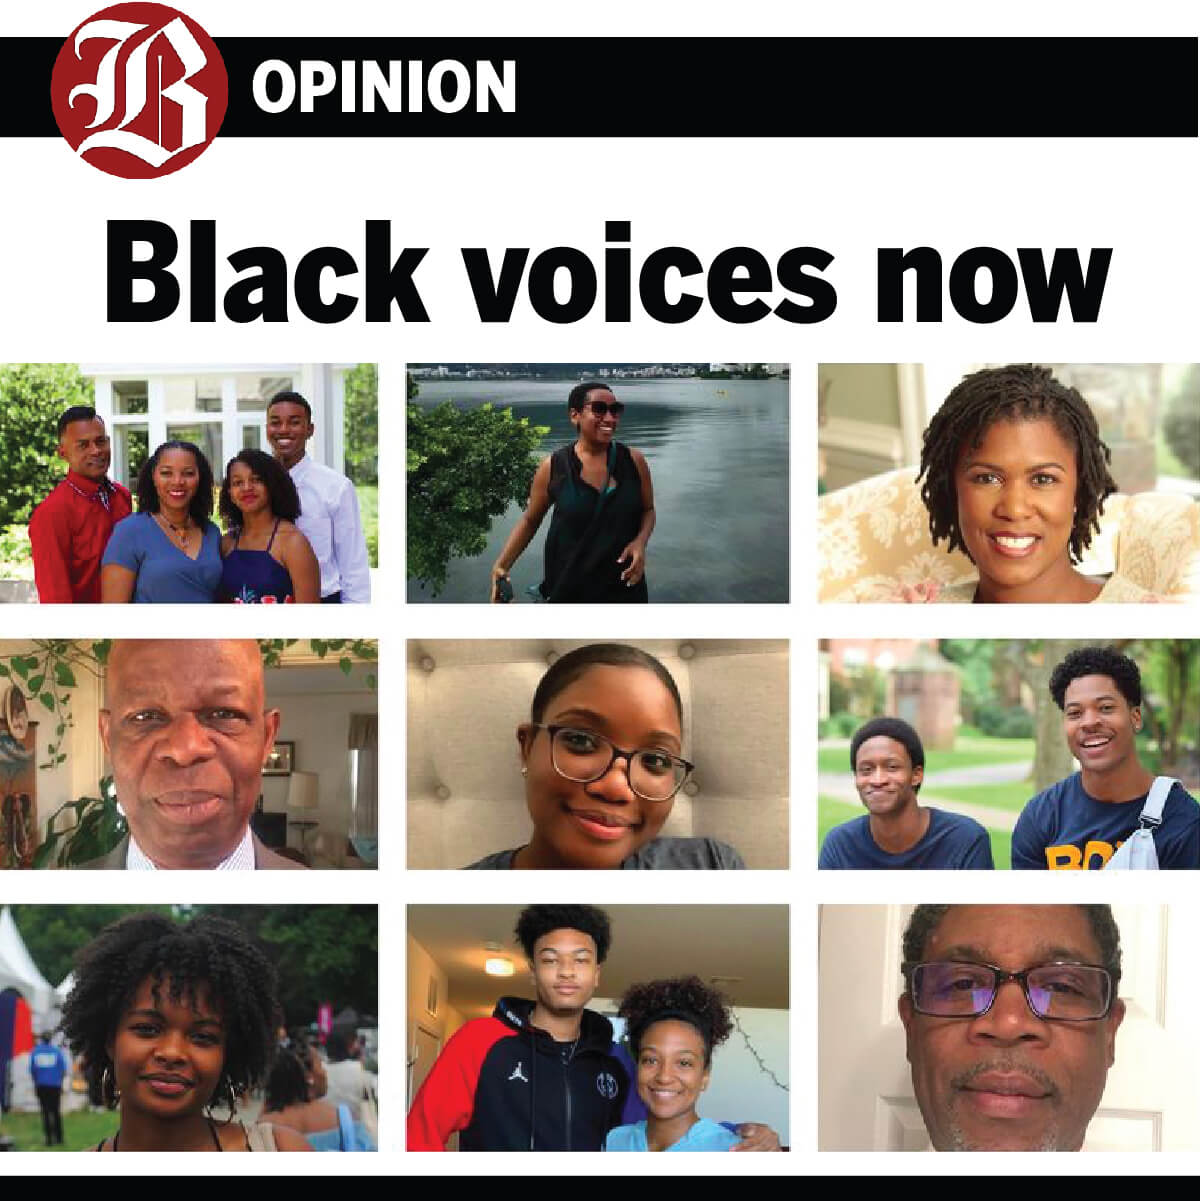 Black voices now